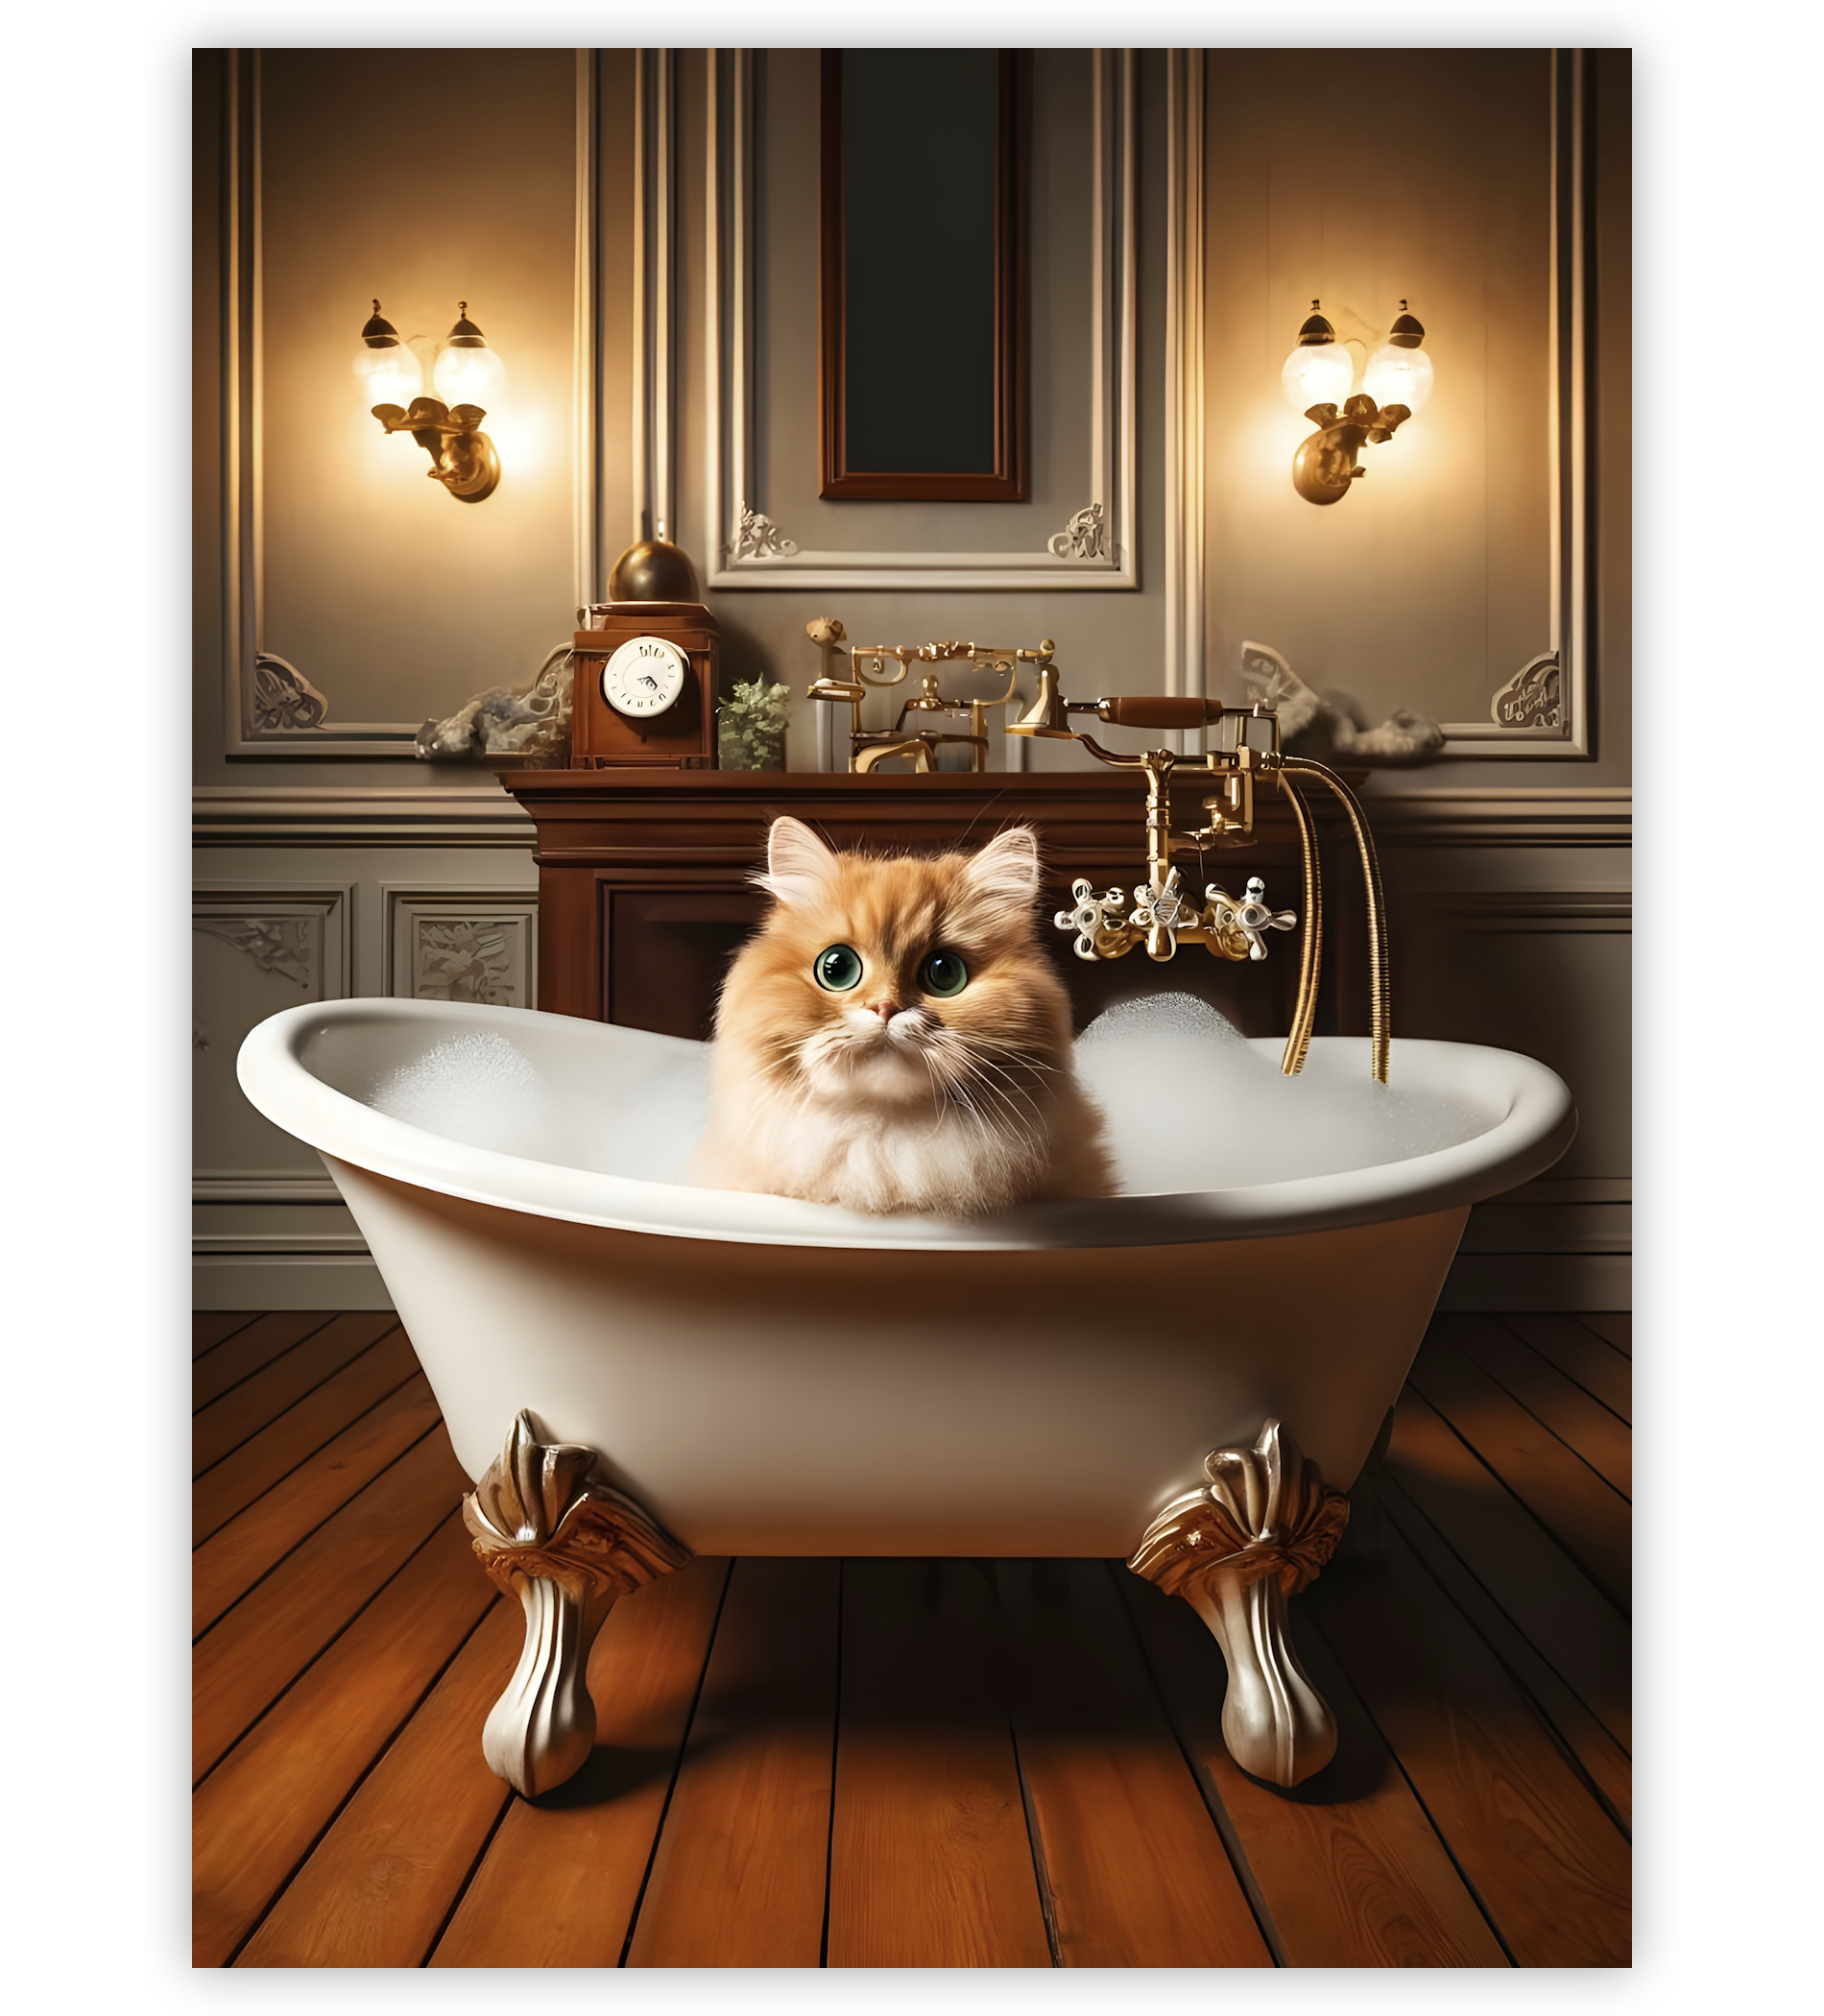 Poster, Wandbild von Katze in Badewanne